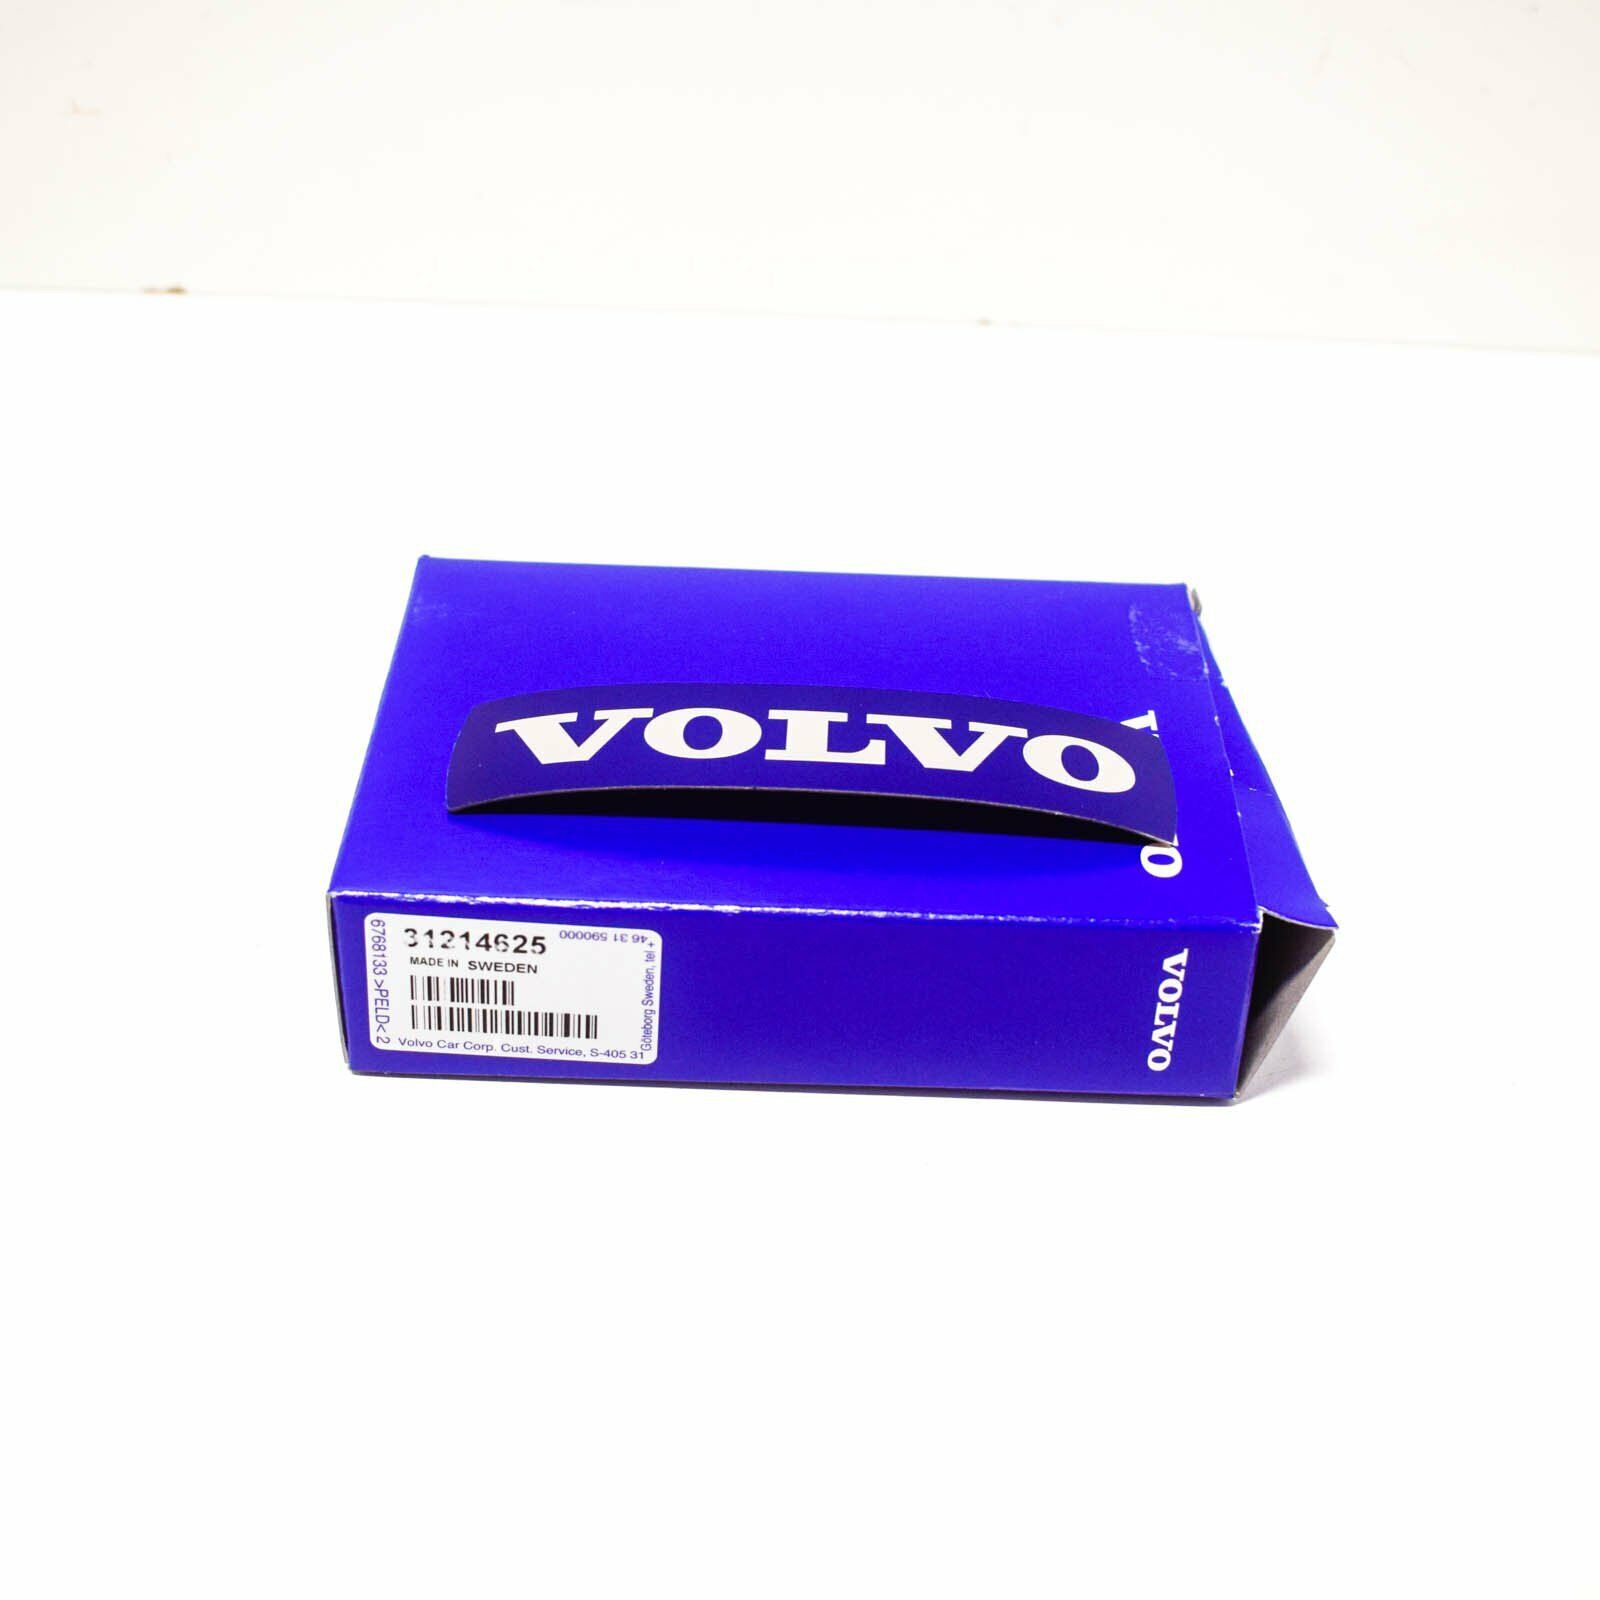 NEW VOLVO V60 FRONT GRILLE EMBLEM BADGE 31214625 OEM